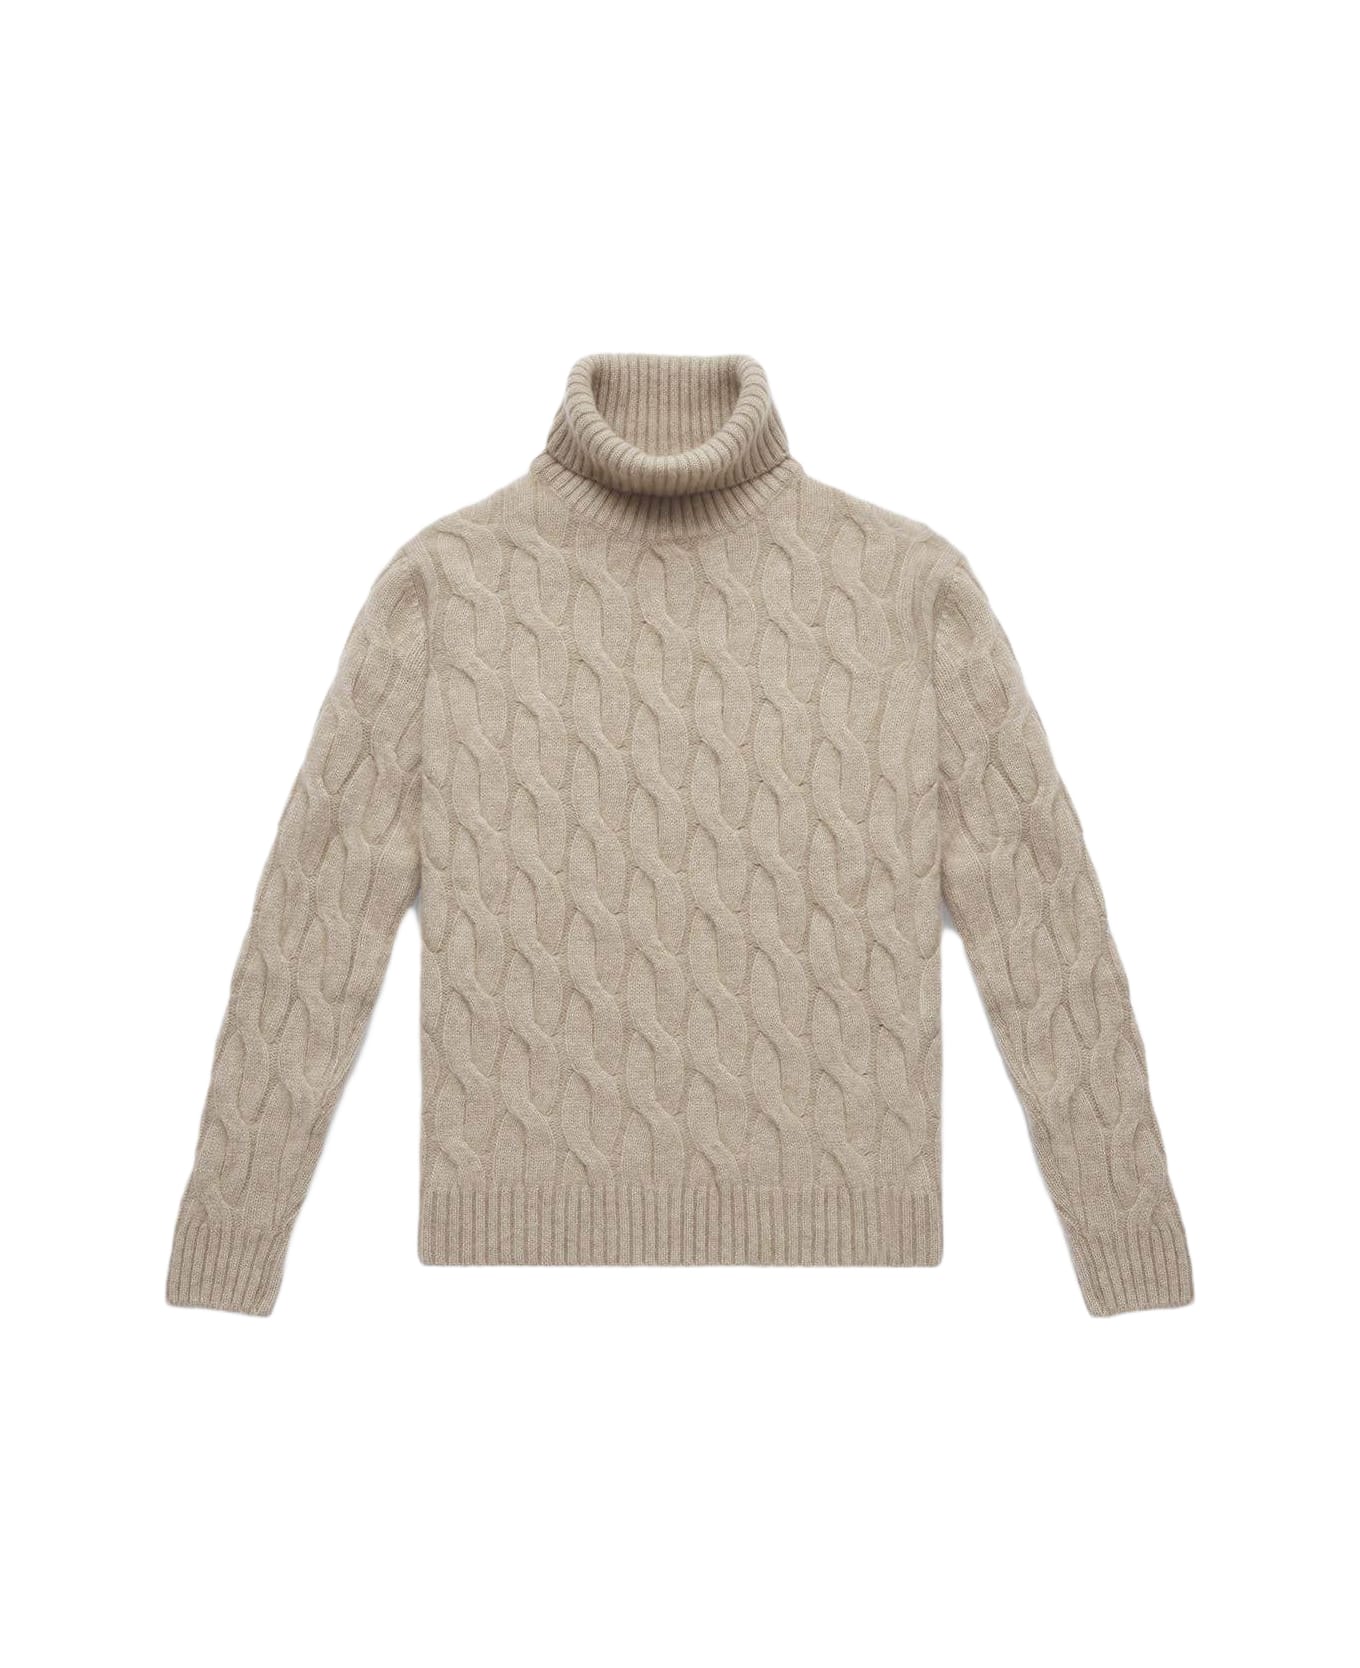 Larusmiani Turtleneck Sweater 'col Du Pillon' Sweater - Beige